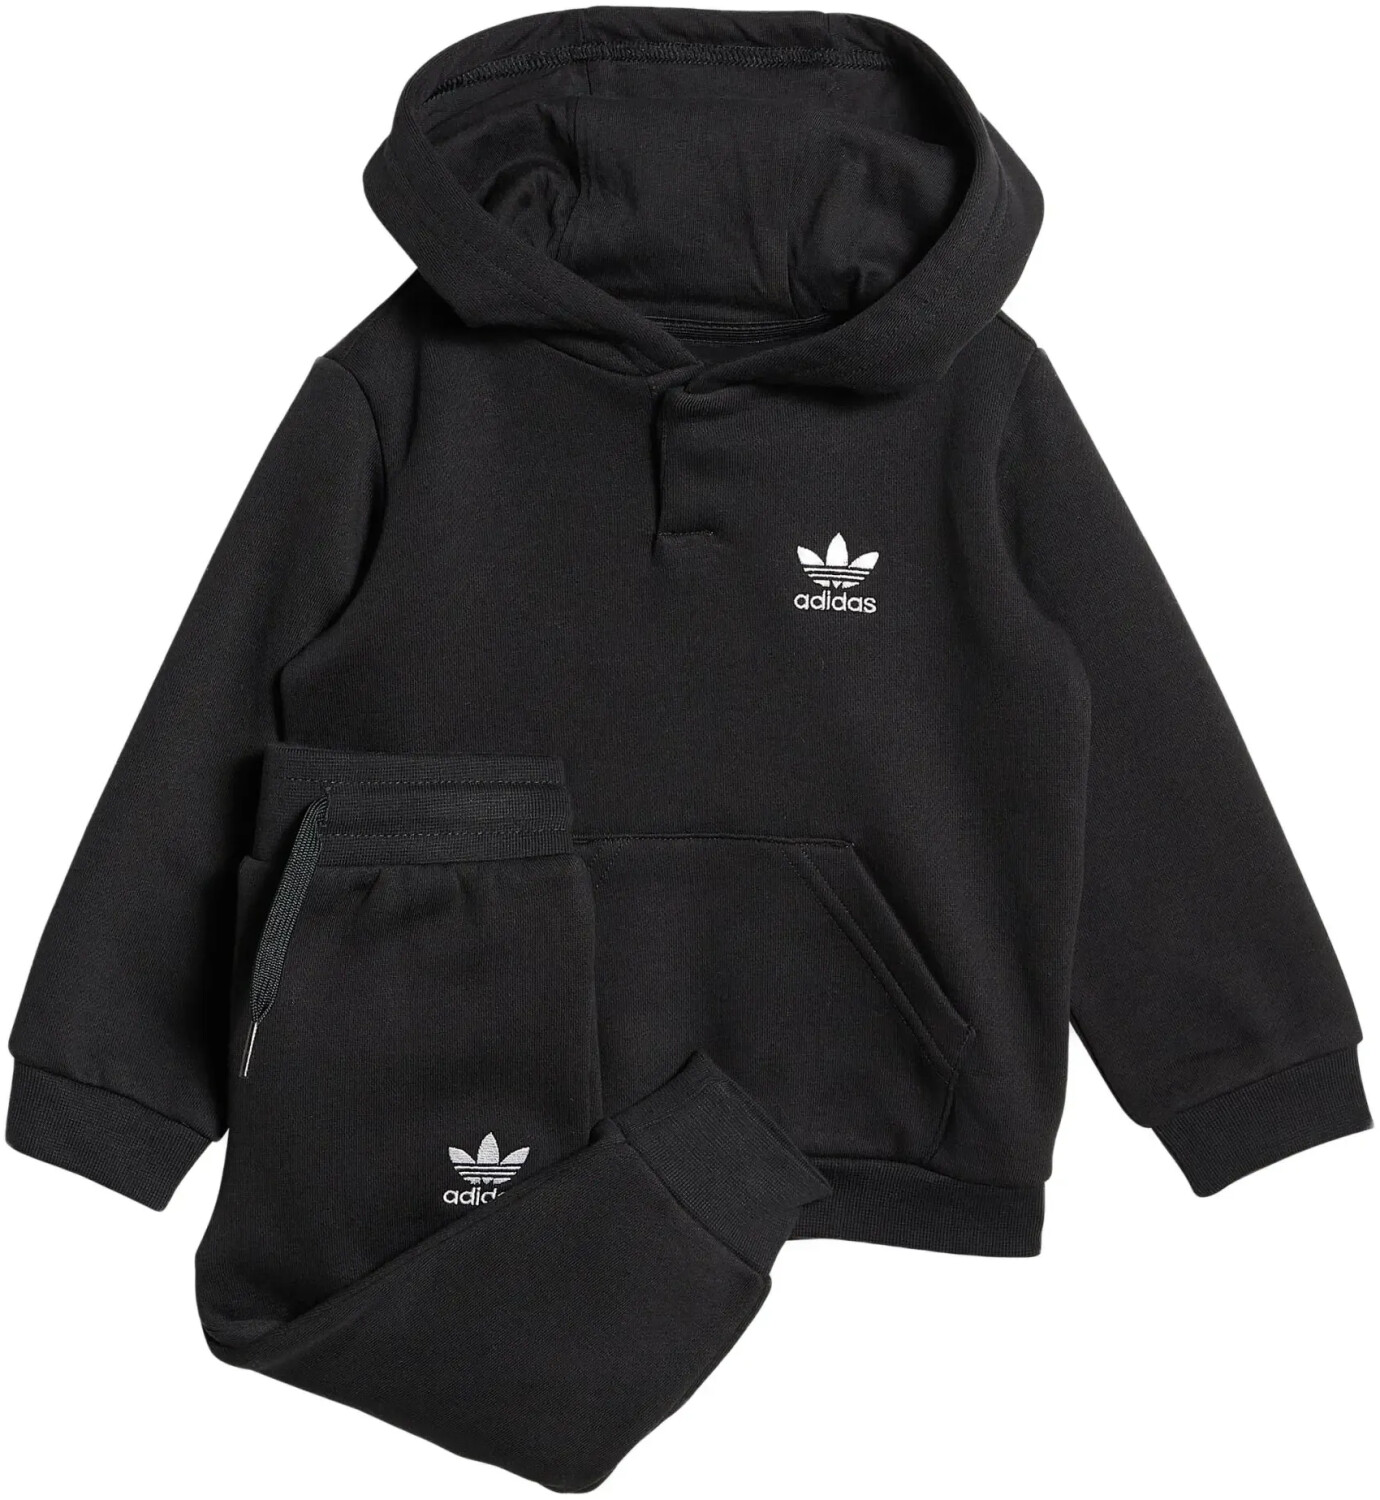 Adidas Originals Adicolor Hoodie Track Suit black ab 27,99 € |  Preisvergleich bei